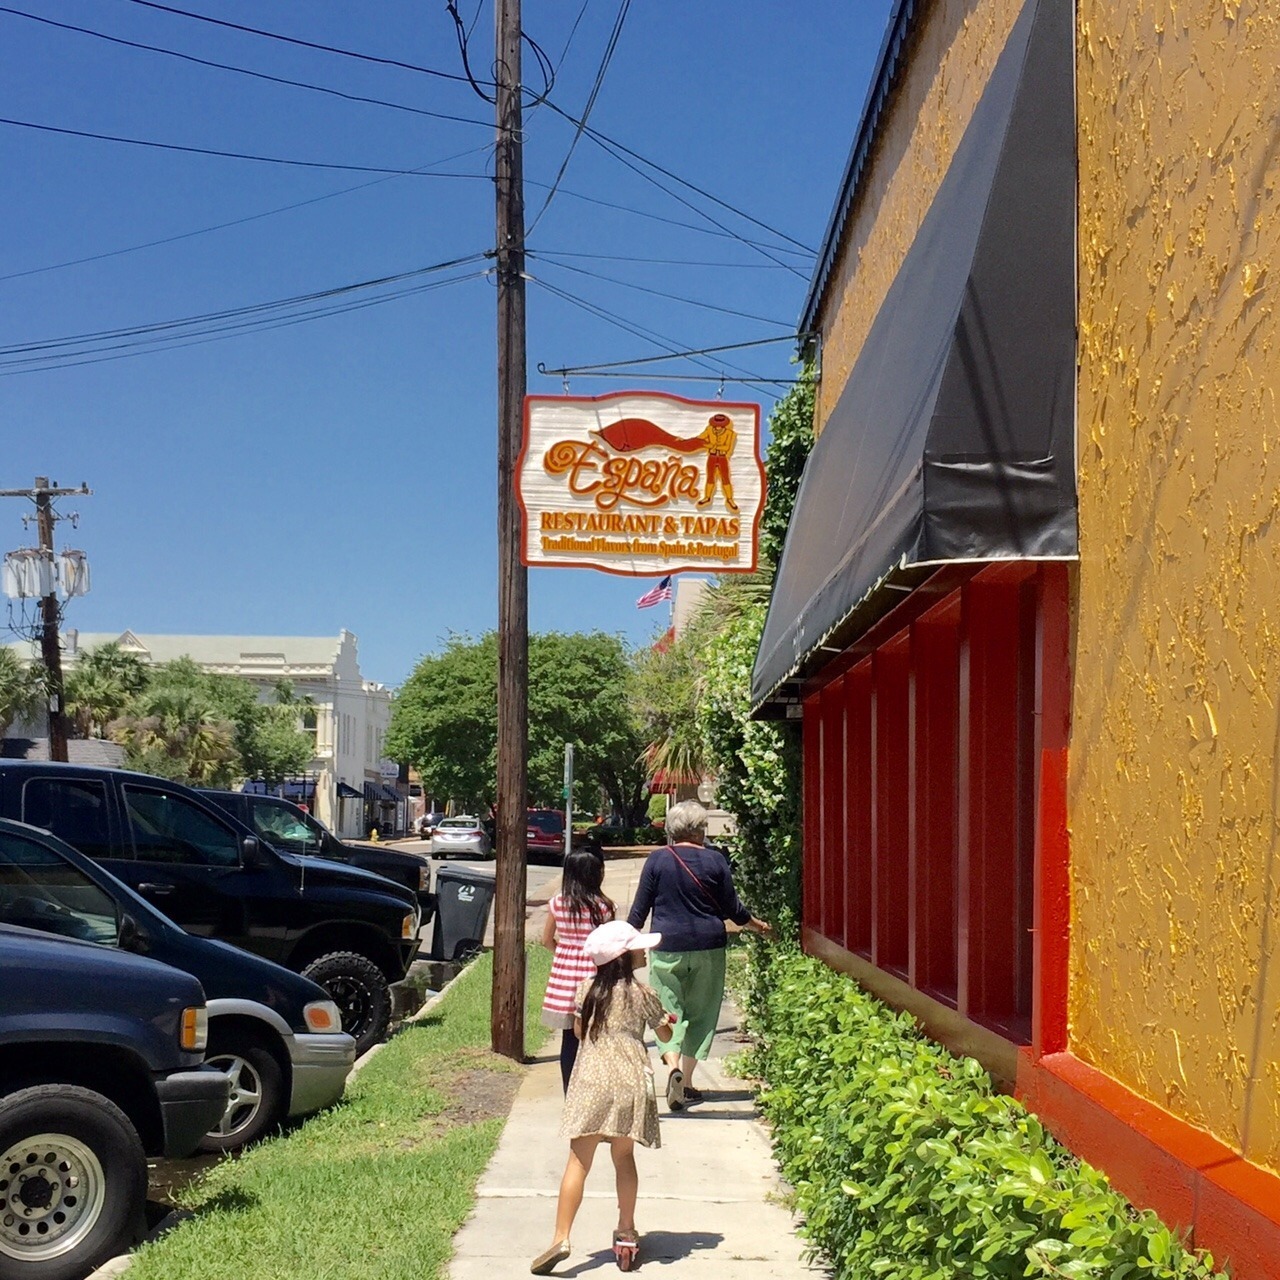 Espana Restaurant in Fernandina Beach, Florida Kidfriendly